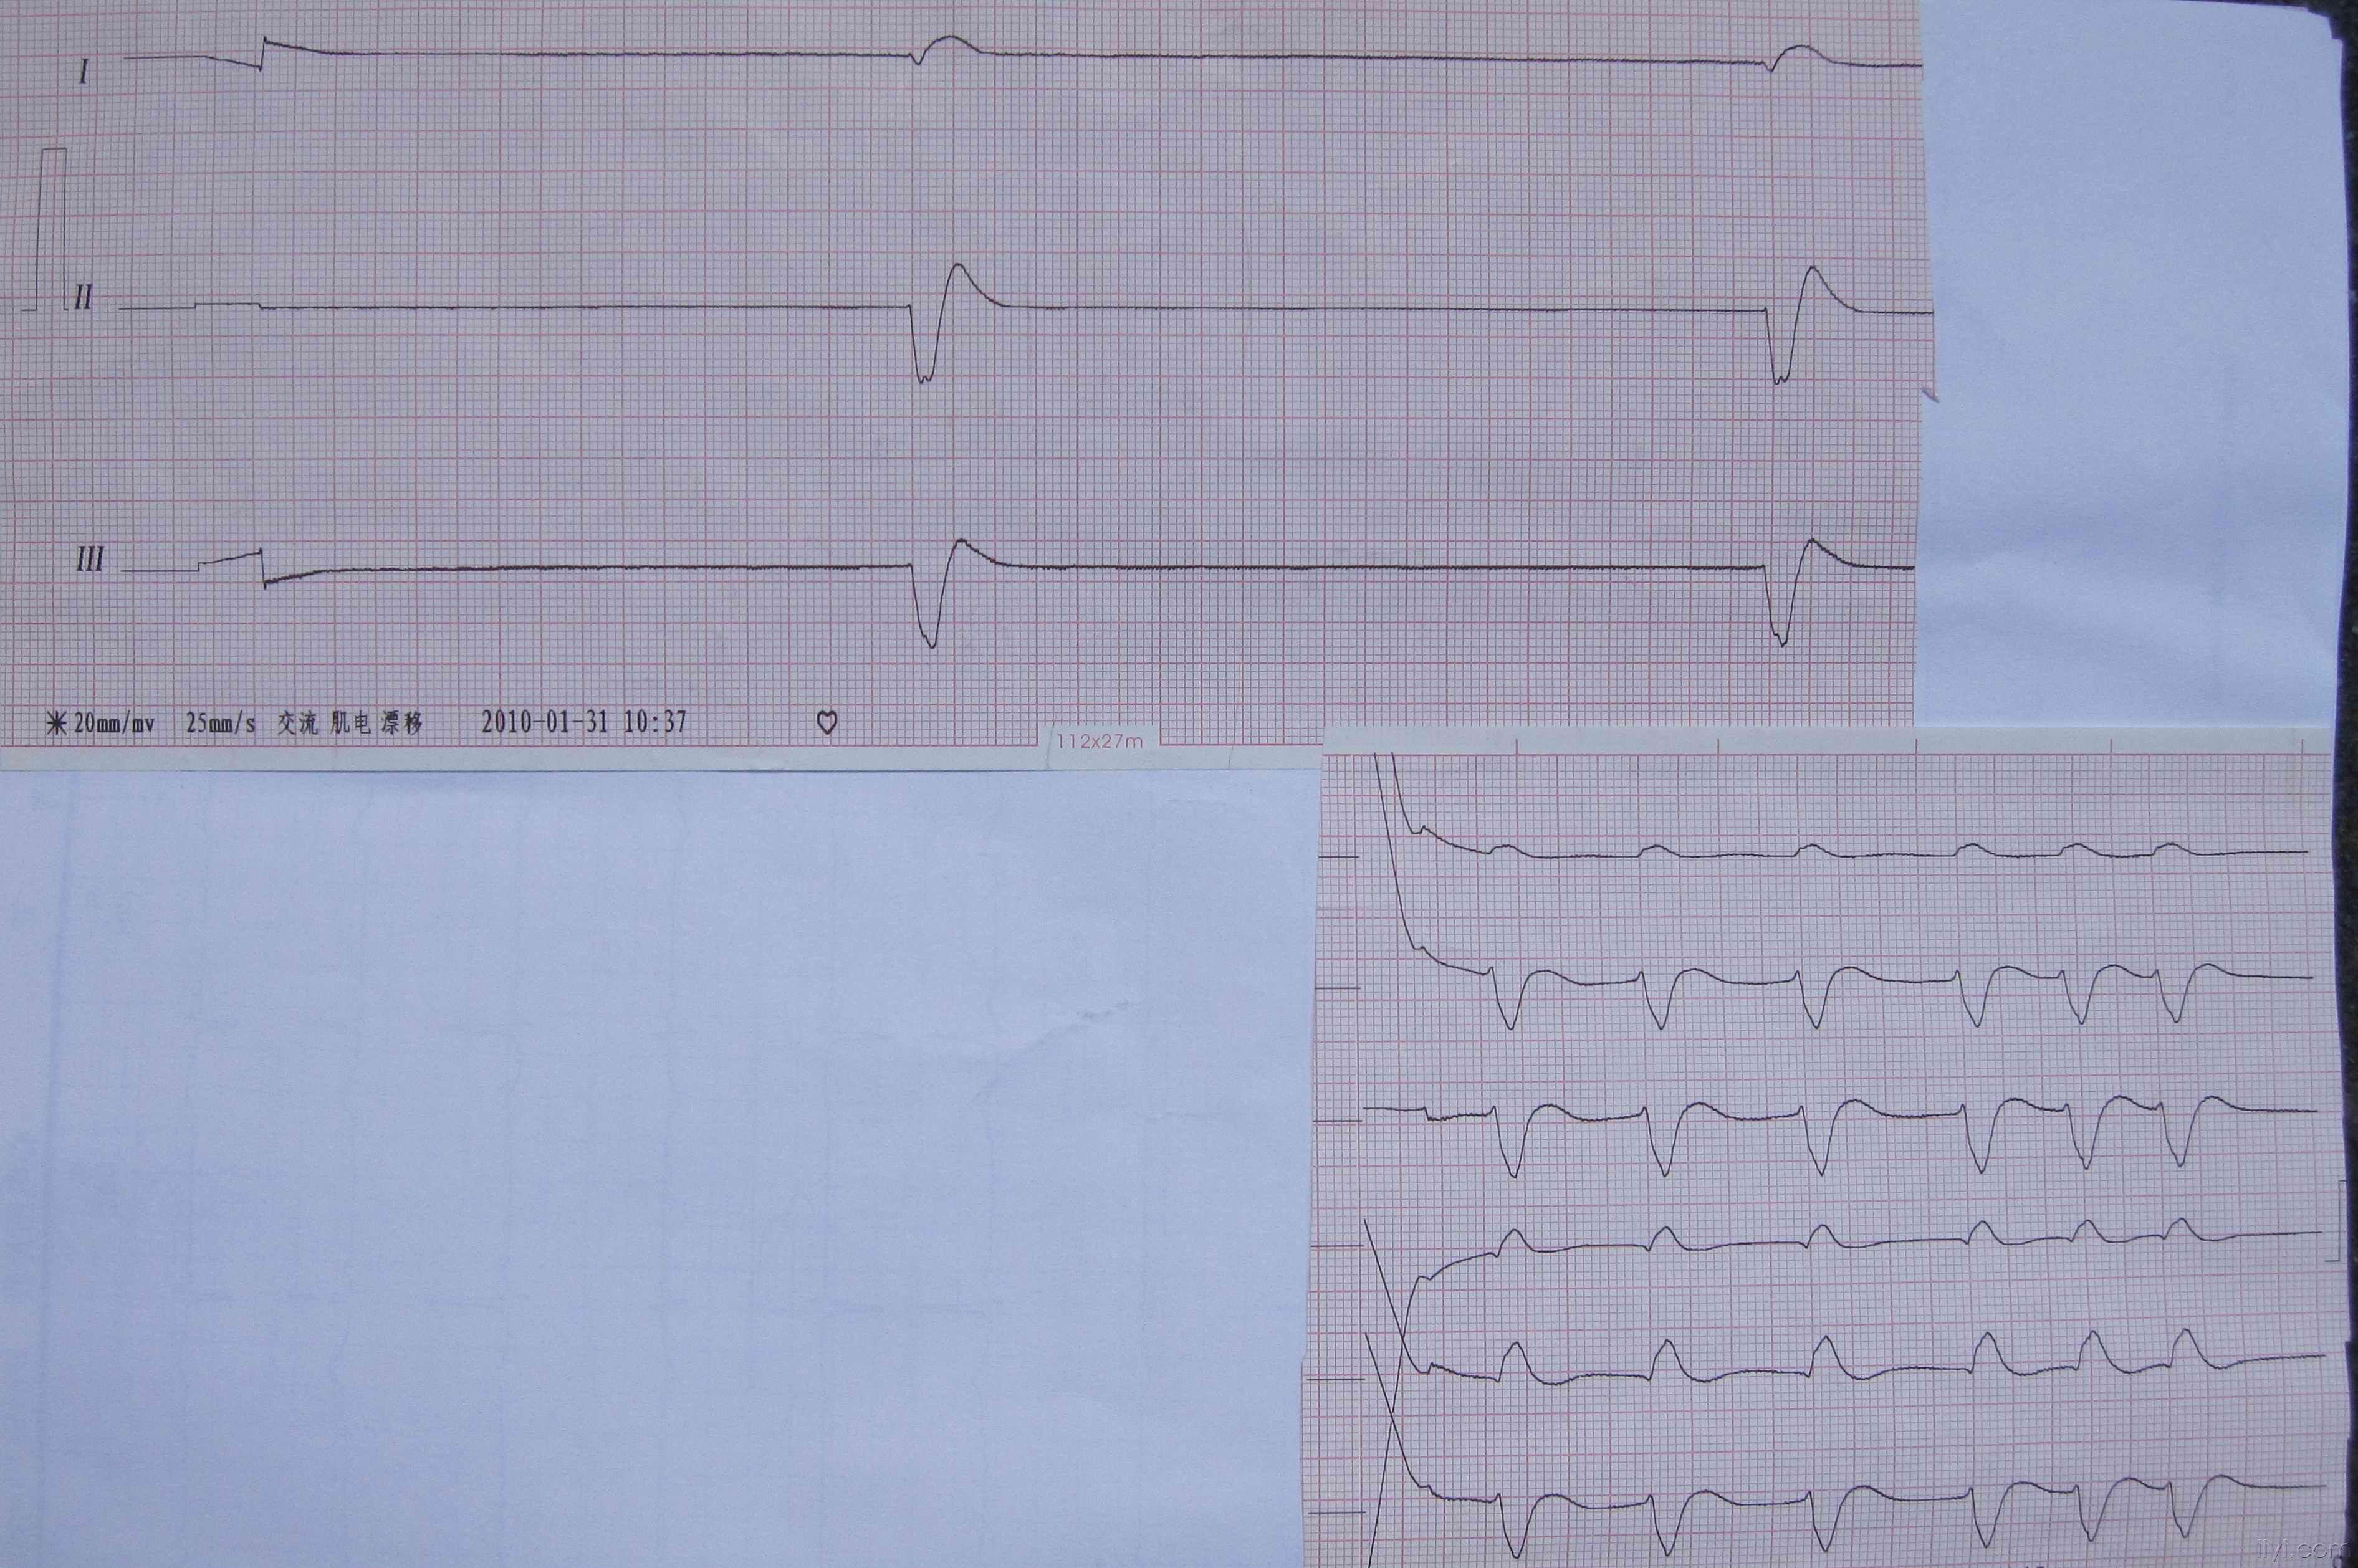 心脏停止跳动20分钟后,经心肺复苏出现的心电图